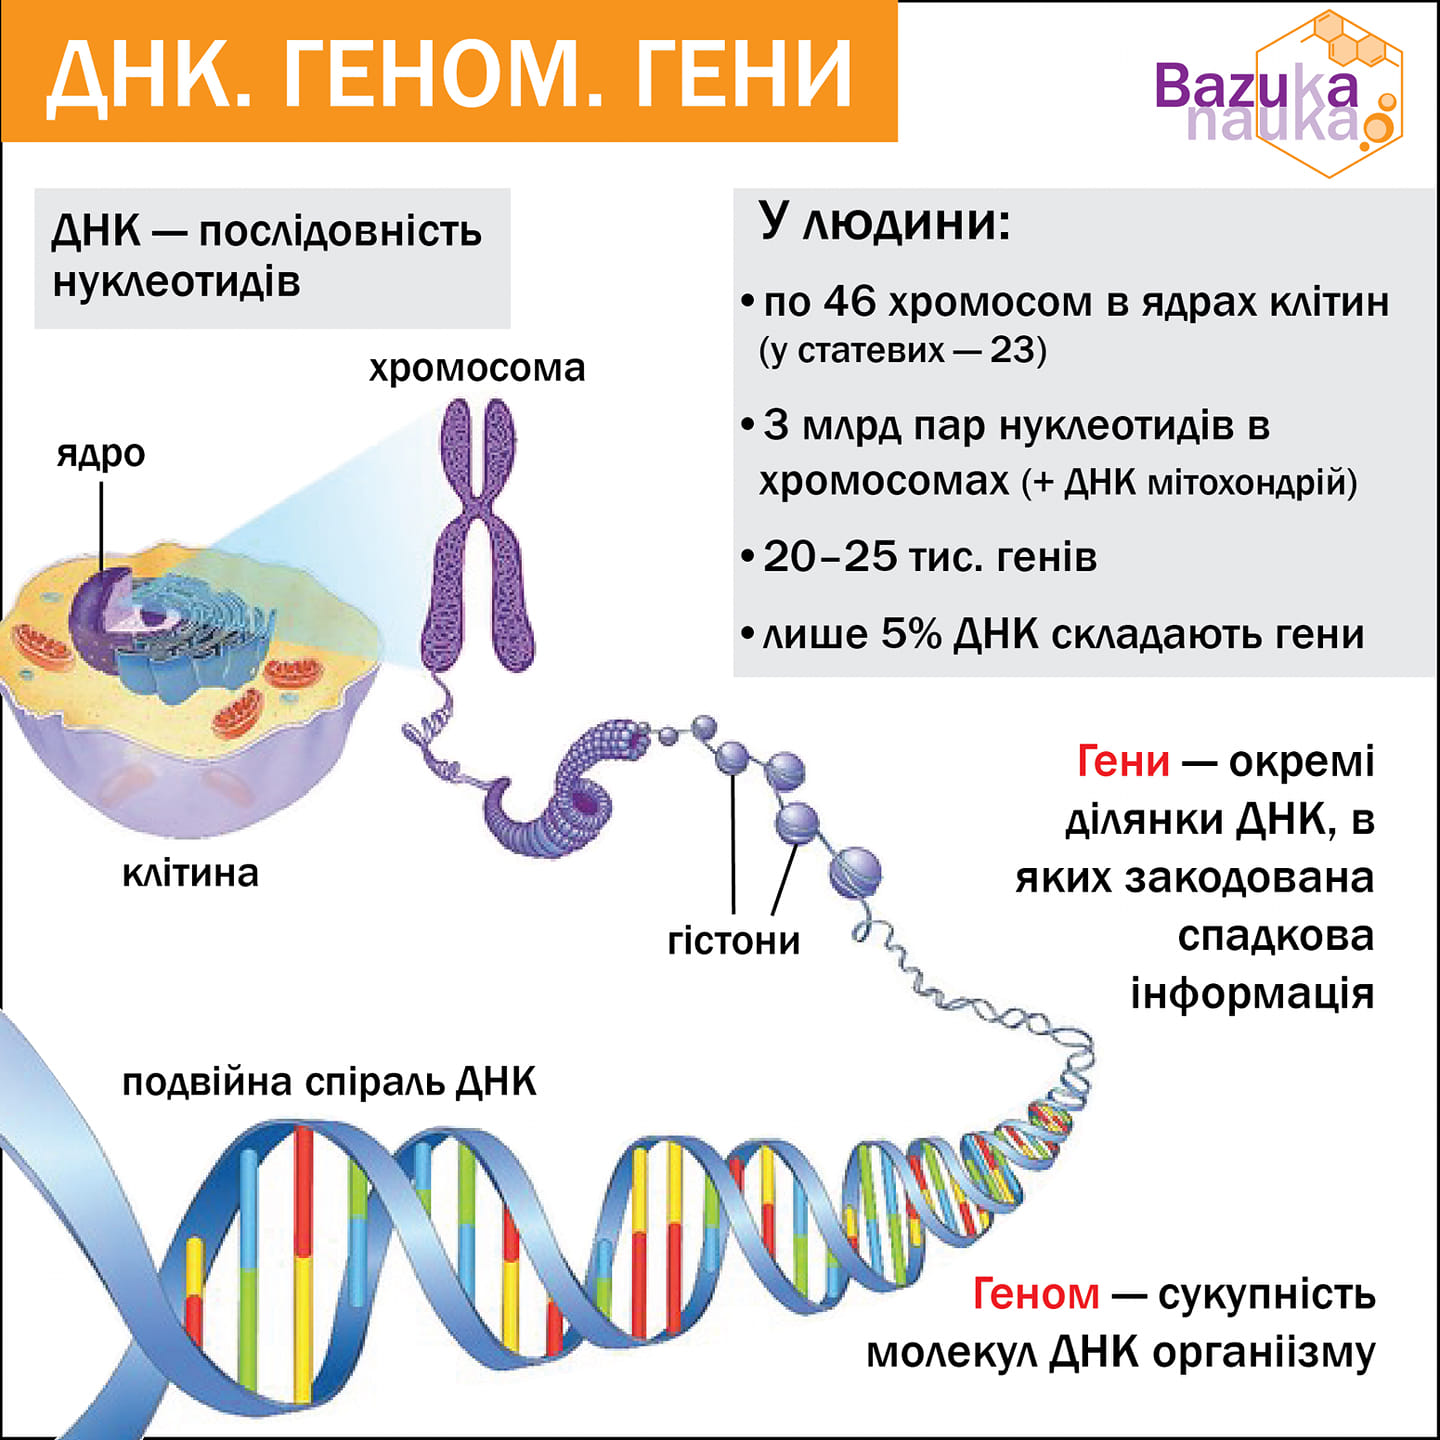 Молекулы днк находится в хромосомах. ДНК И хромосомы. Гены и хромосомы. Клетка ДНК. Генетический материал человека.